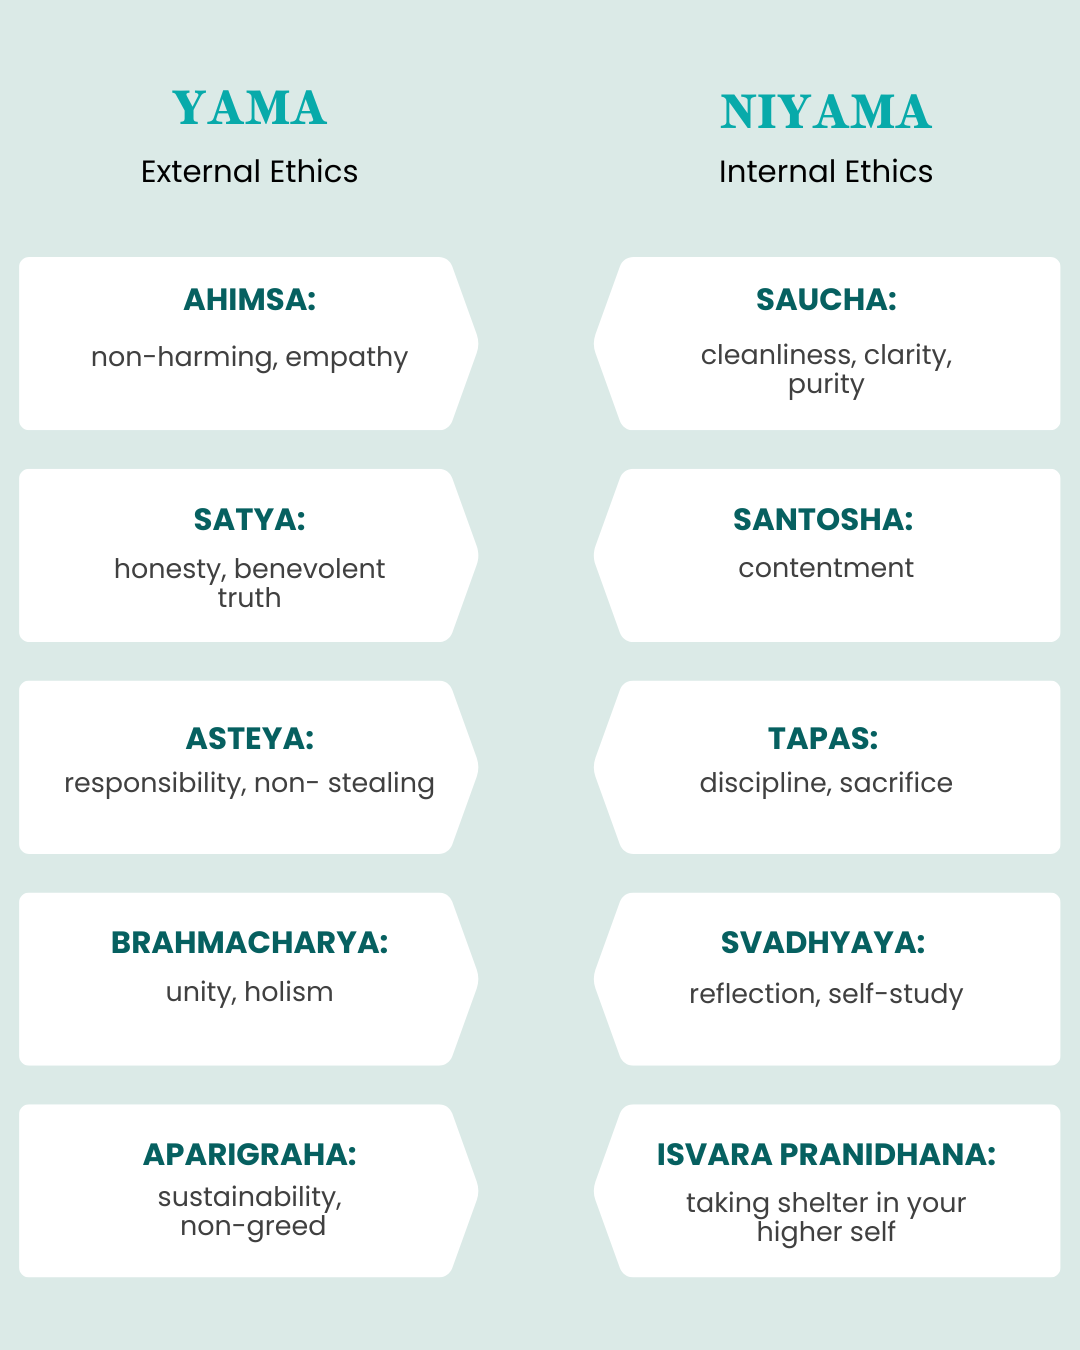 yama and niyama chart listing all the yamas and niyamas: ahimsa, satya, asteya, brahmacharya, and aparigraha as the yamas, or external ethics and saucha, santosha, tapas, svadhyaya, isvara pranidhana as the niyamas, or internal ethics